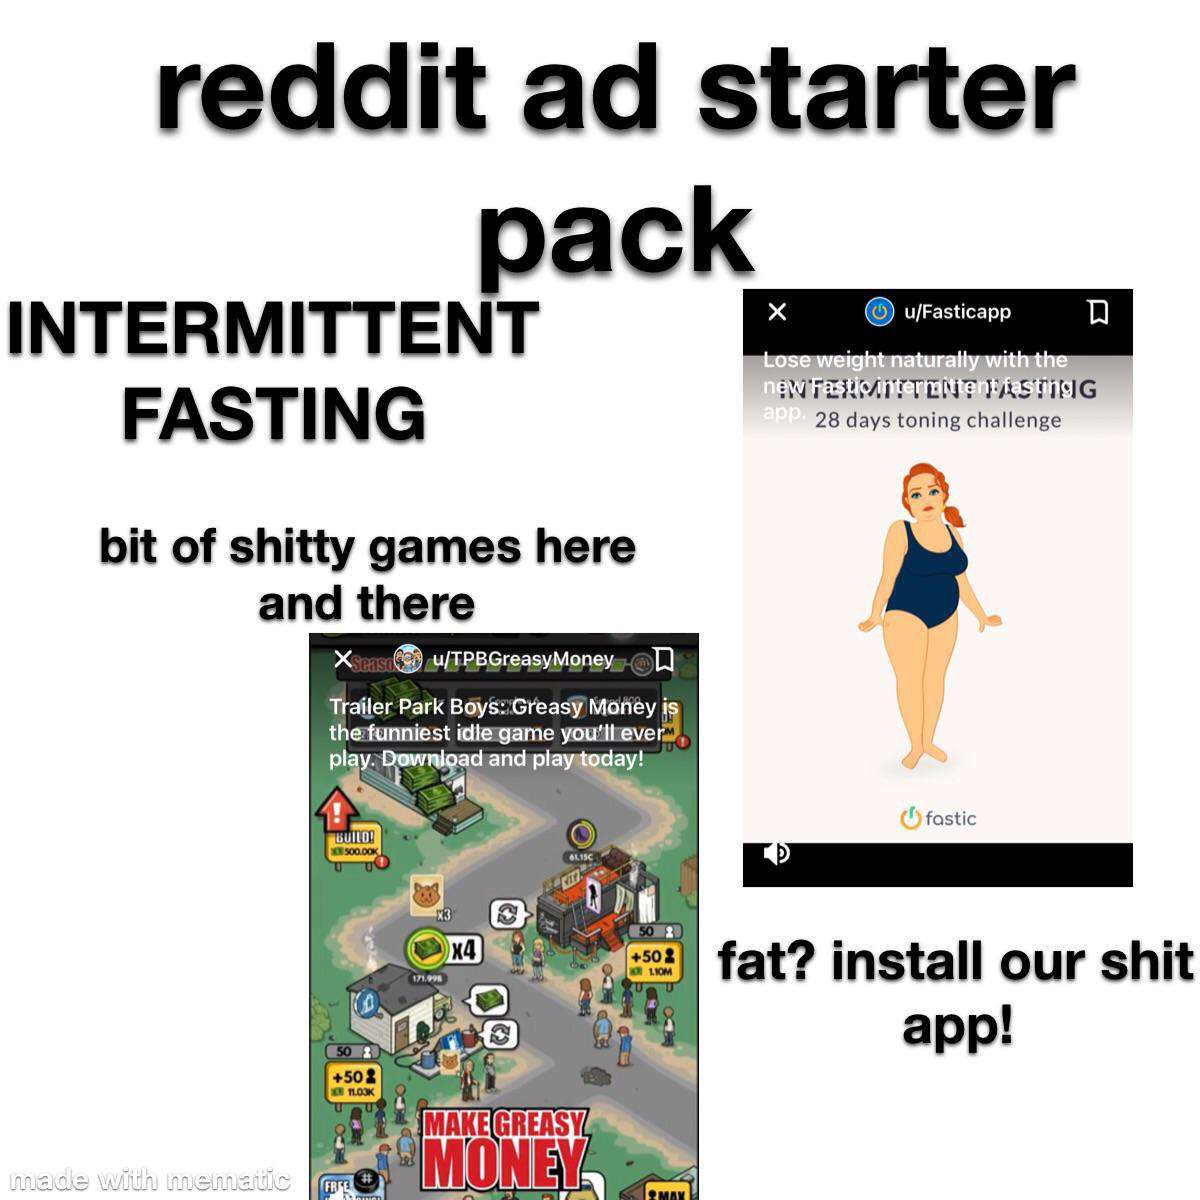 image showing reddit ad starter pack